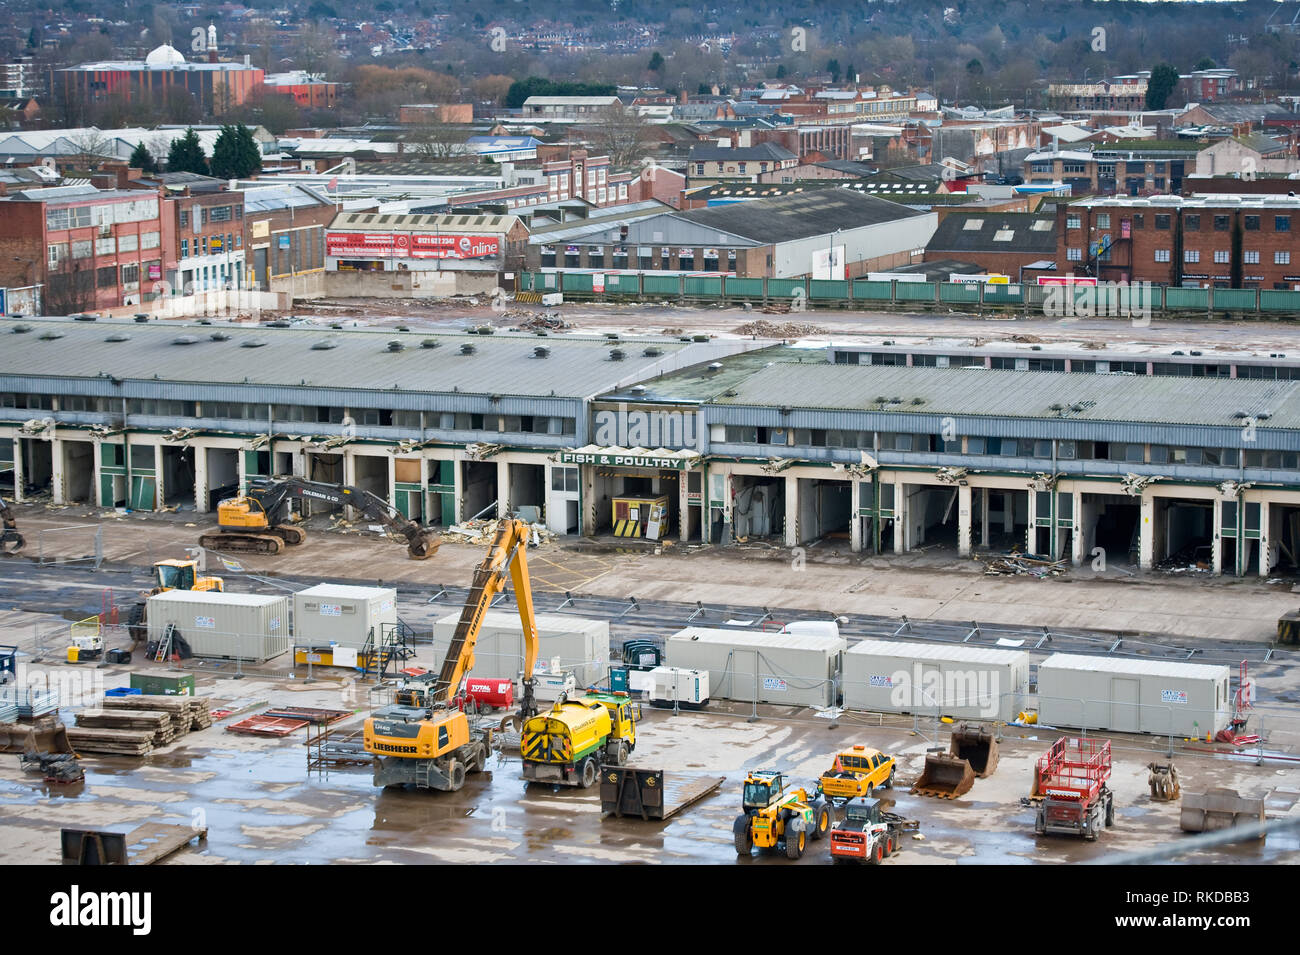 Birmingham Großmärkte Revier komplett abgerissen, um Platz für eine neue multifunktionale Entwicklung zu machen. Stockfoto